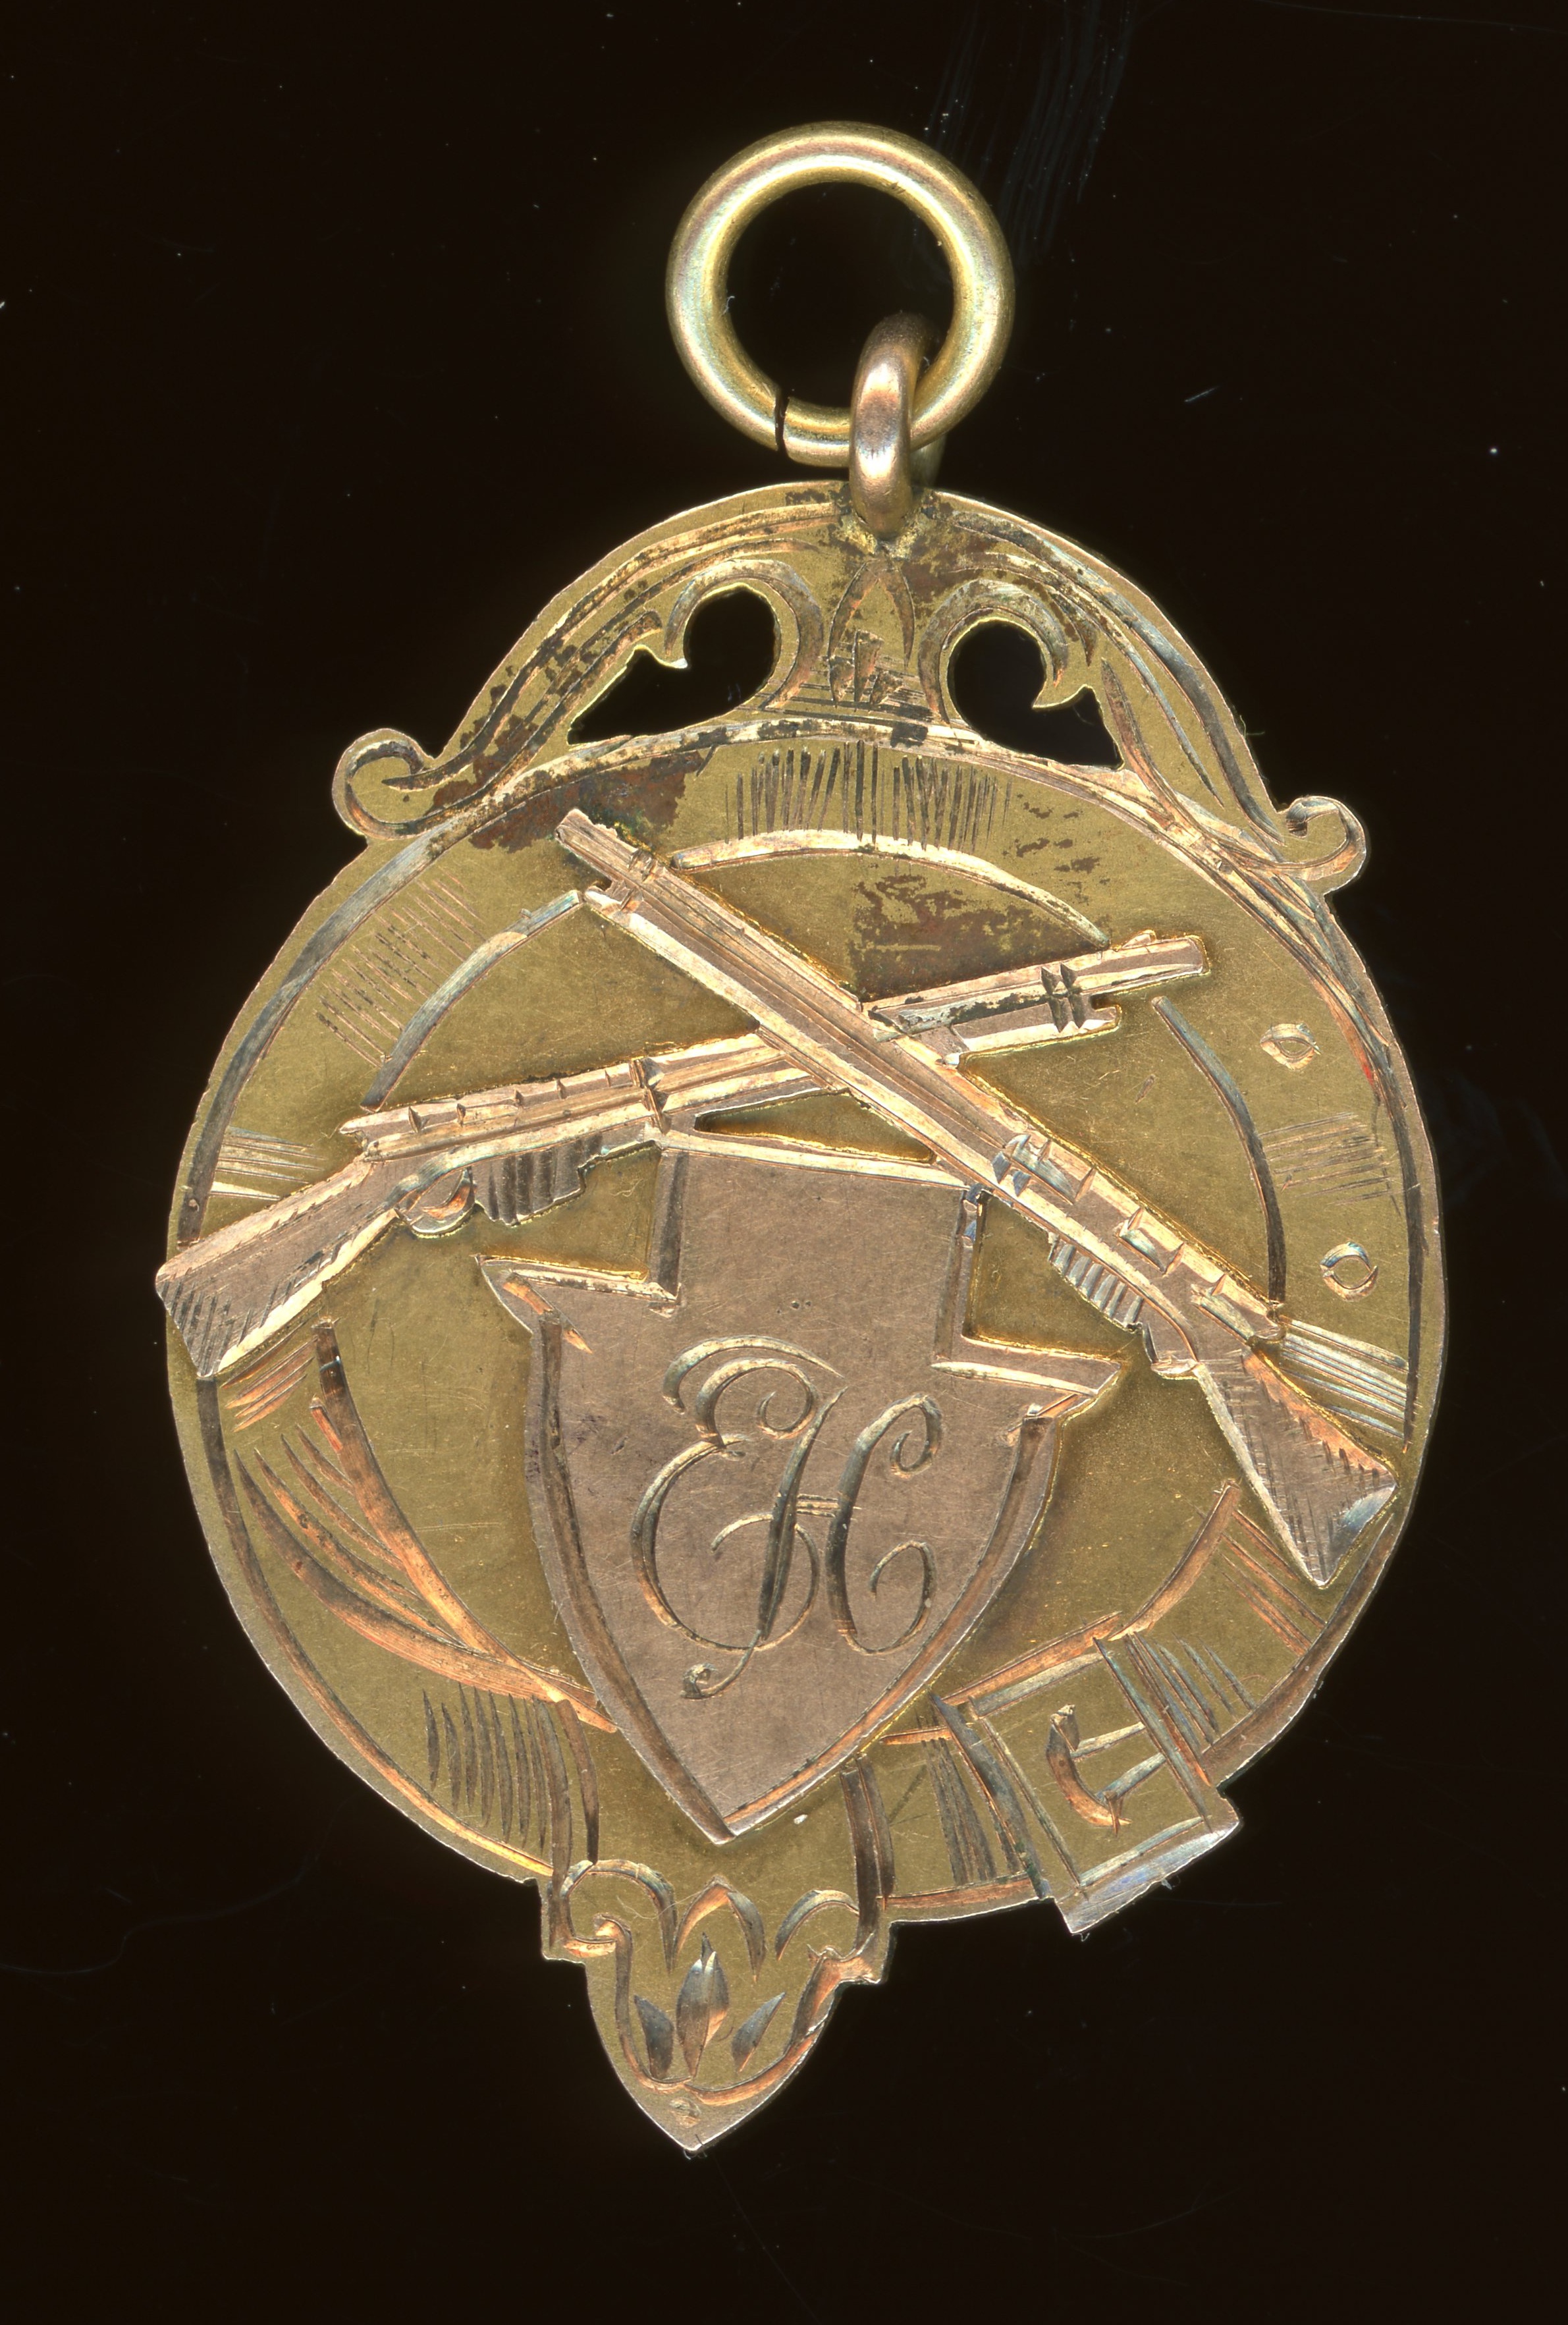 Edward Hoskin - St Andrews commemorative medallion, 1919